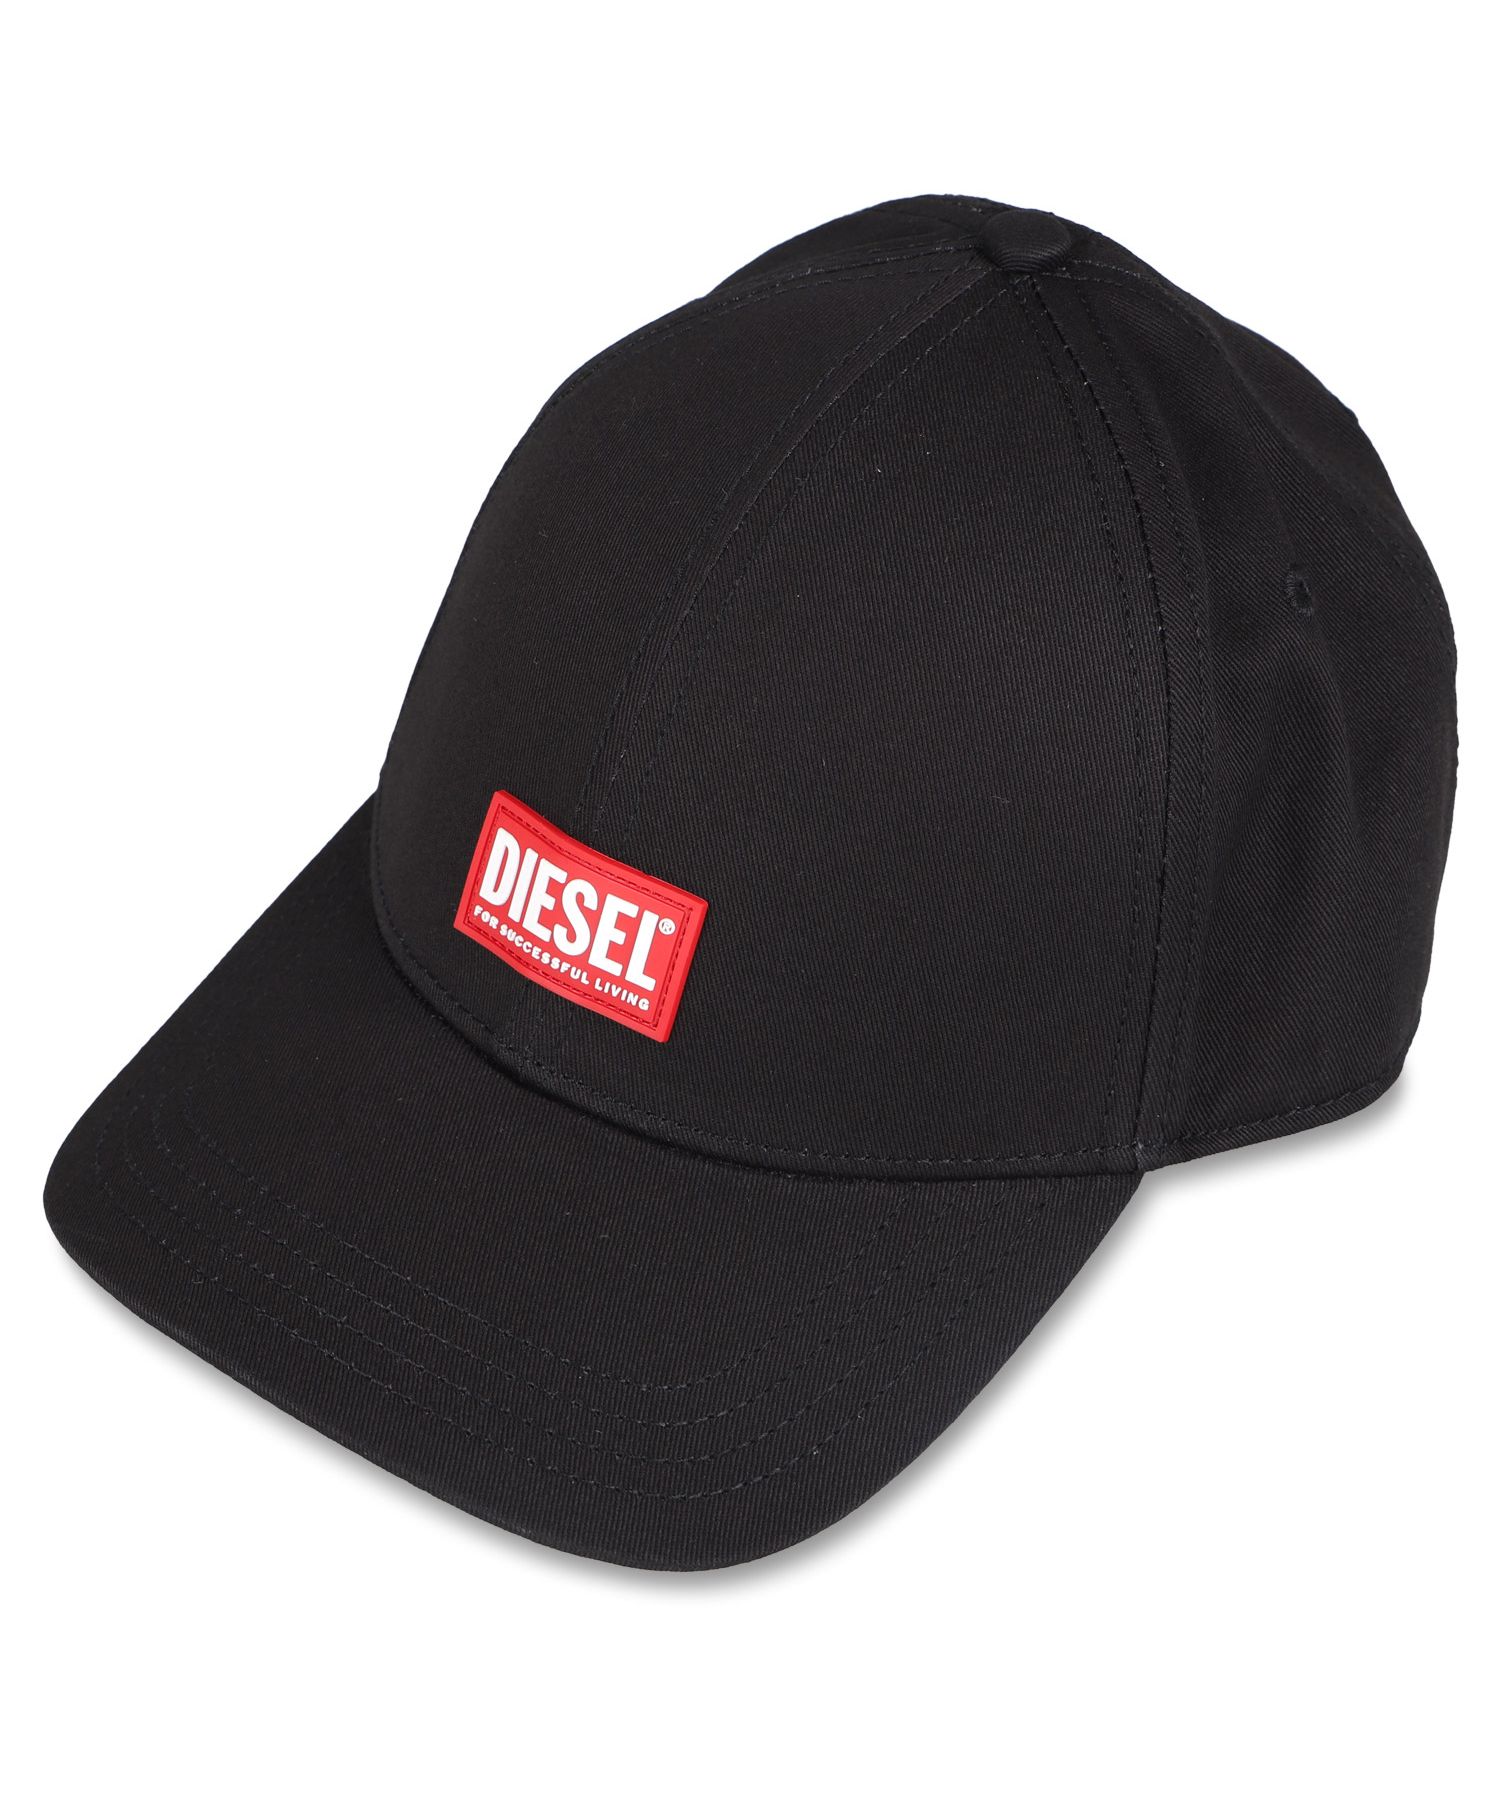 ディーゼル(DIESEL) レディース帽子・キャップ | 通販・人気ランキング